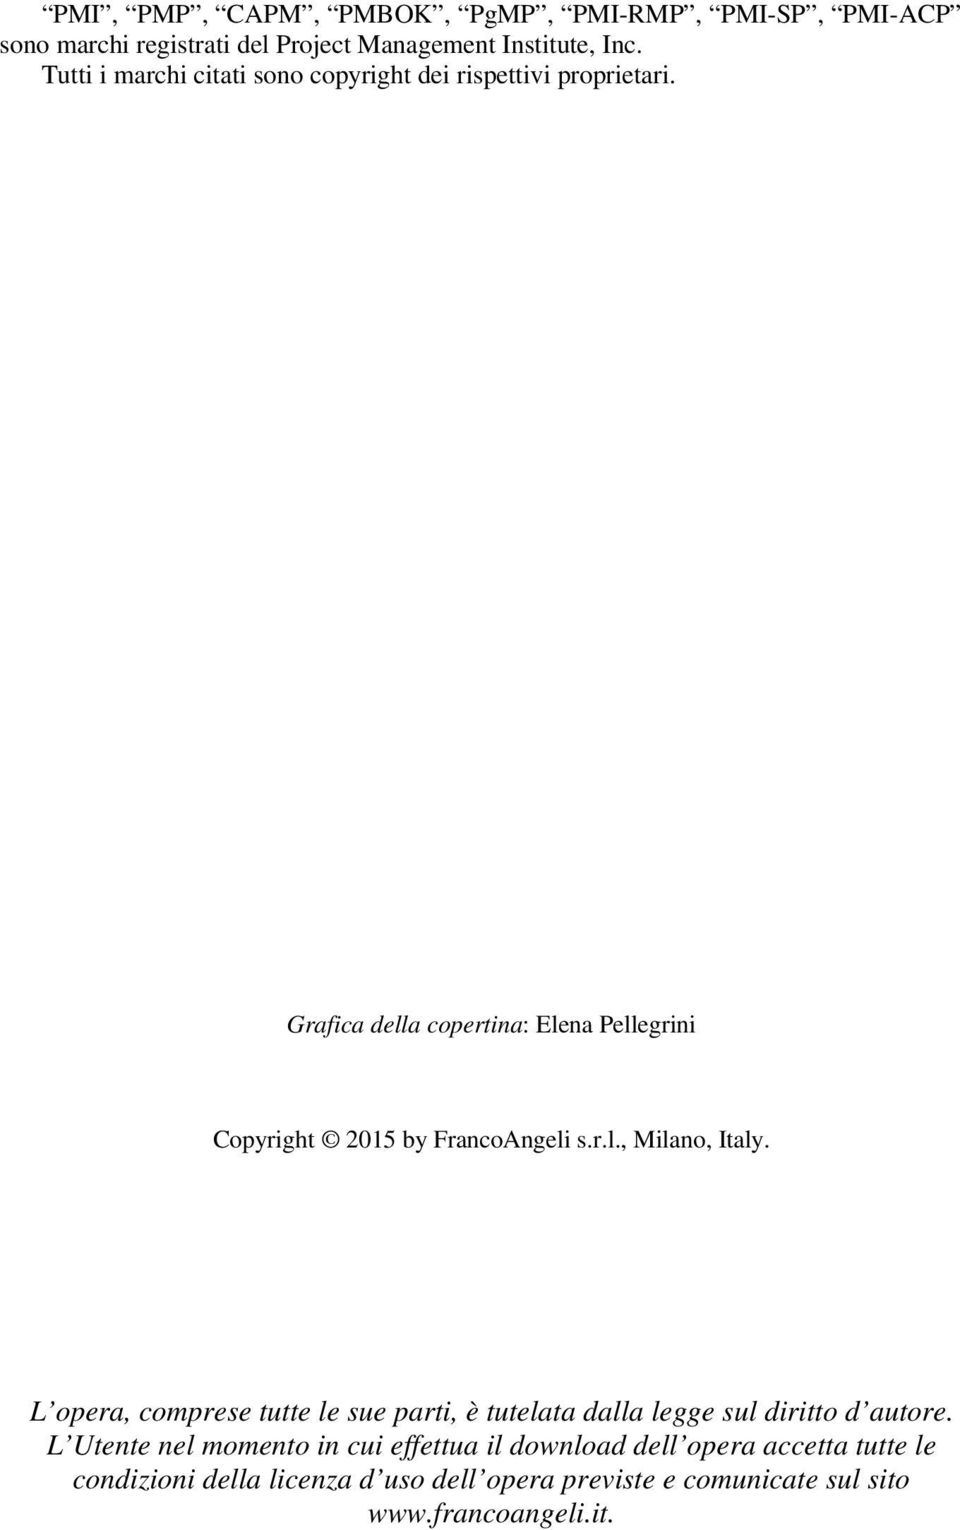 Grafica della copertina: Elena Pellegrini Copyright 2015 by FrancoAngeli s.r.l., Milano, Italy.